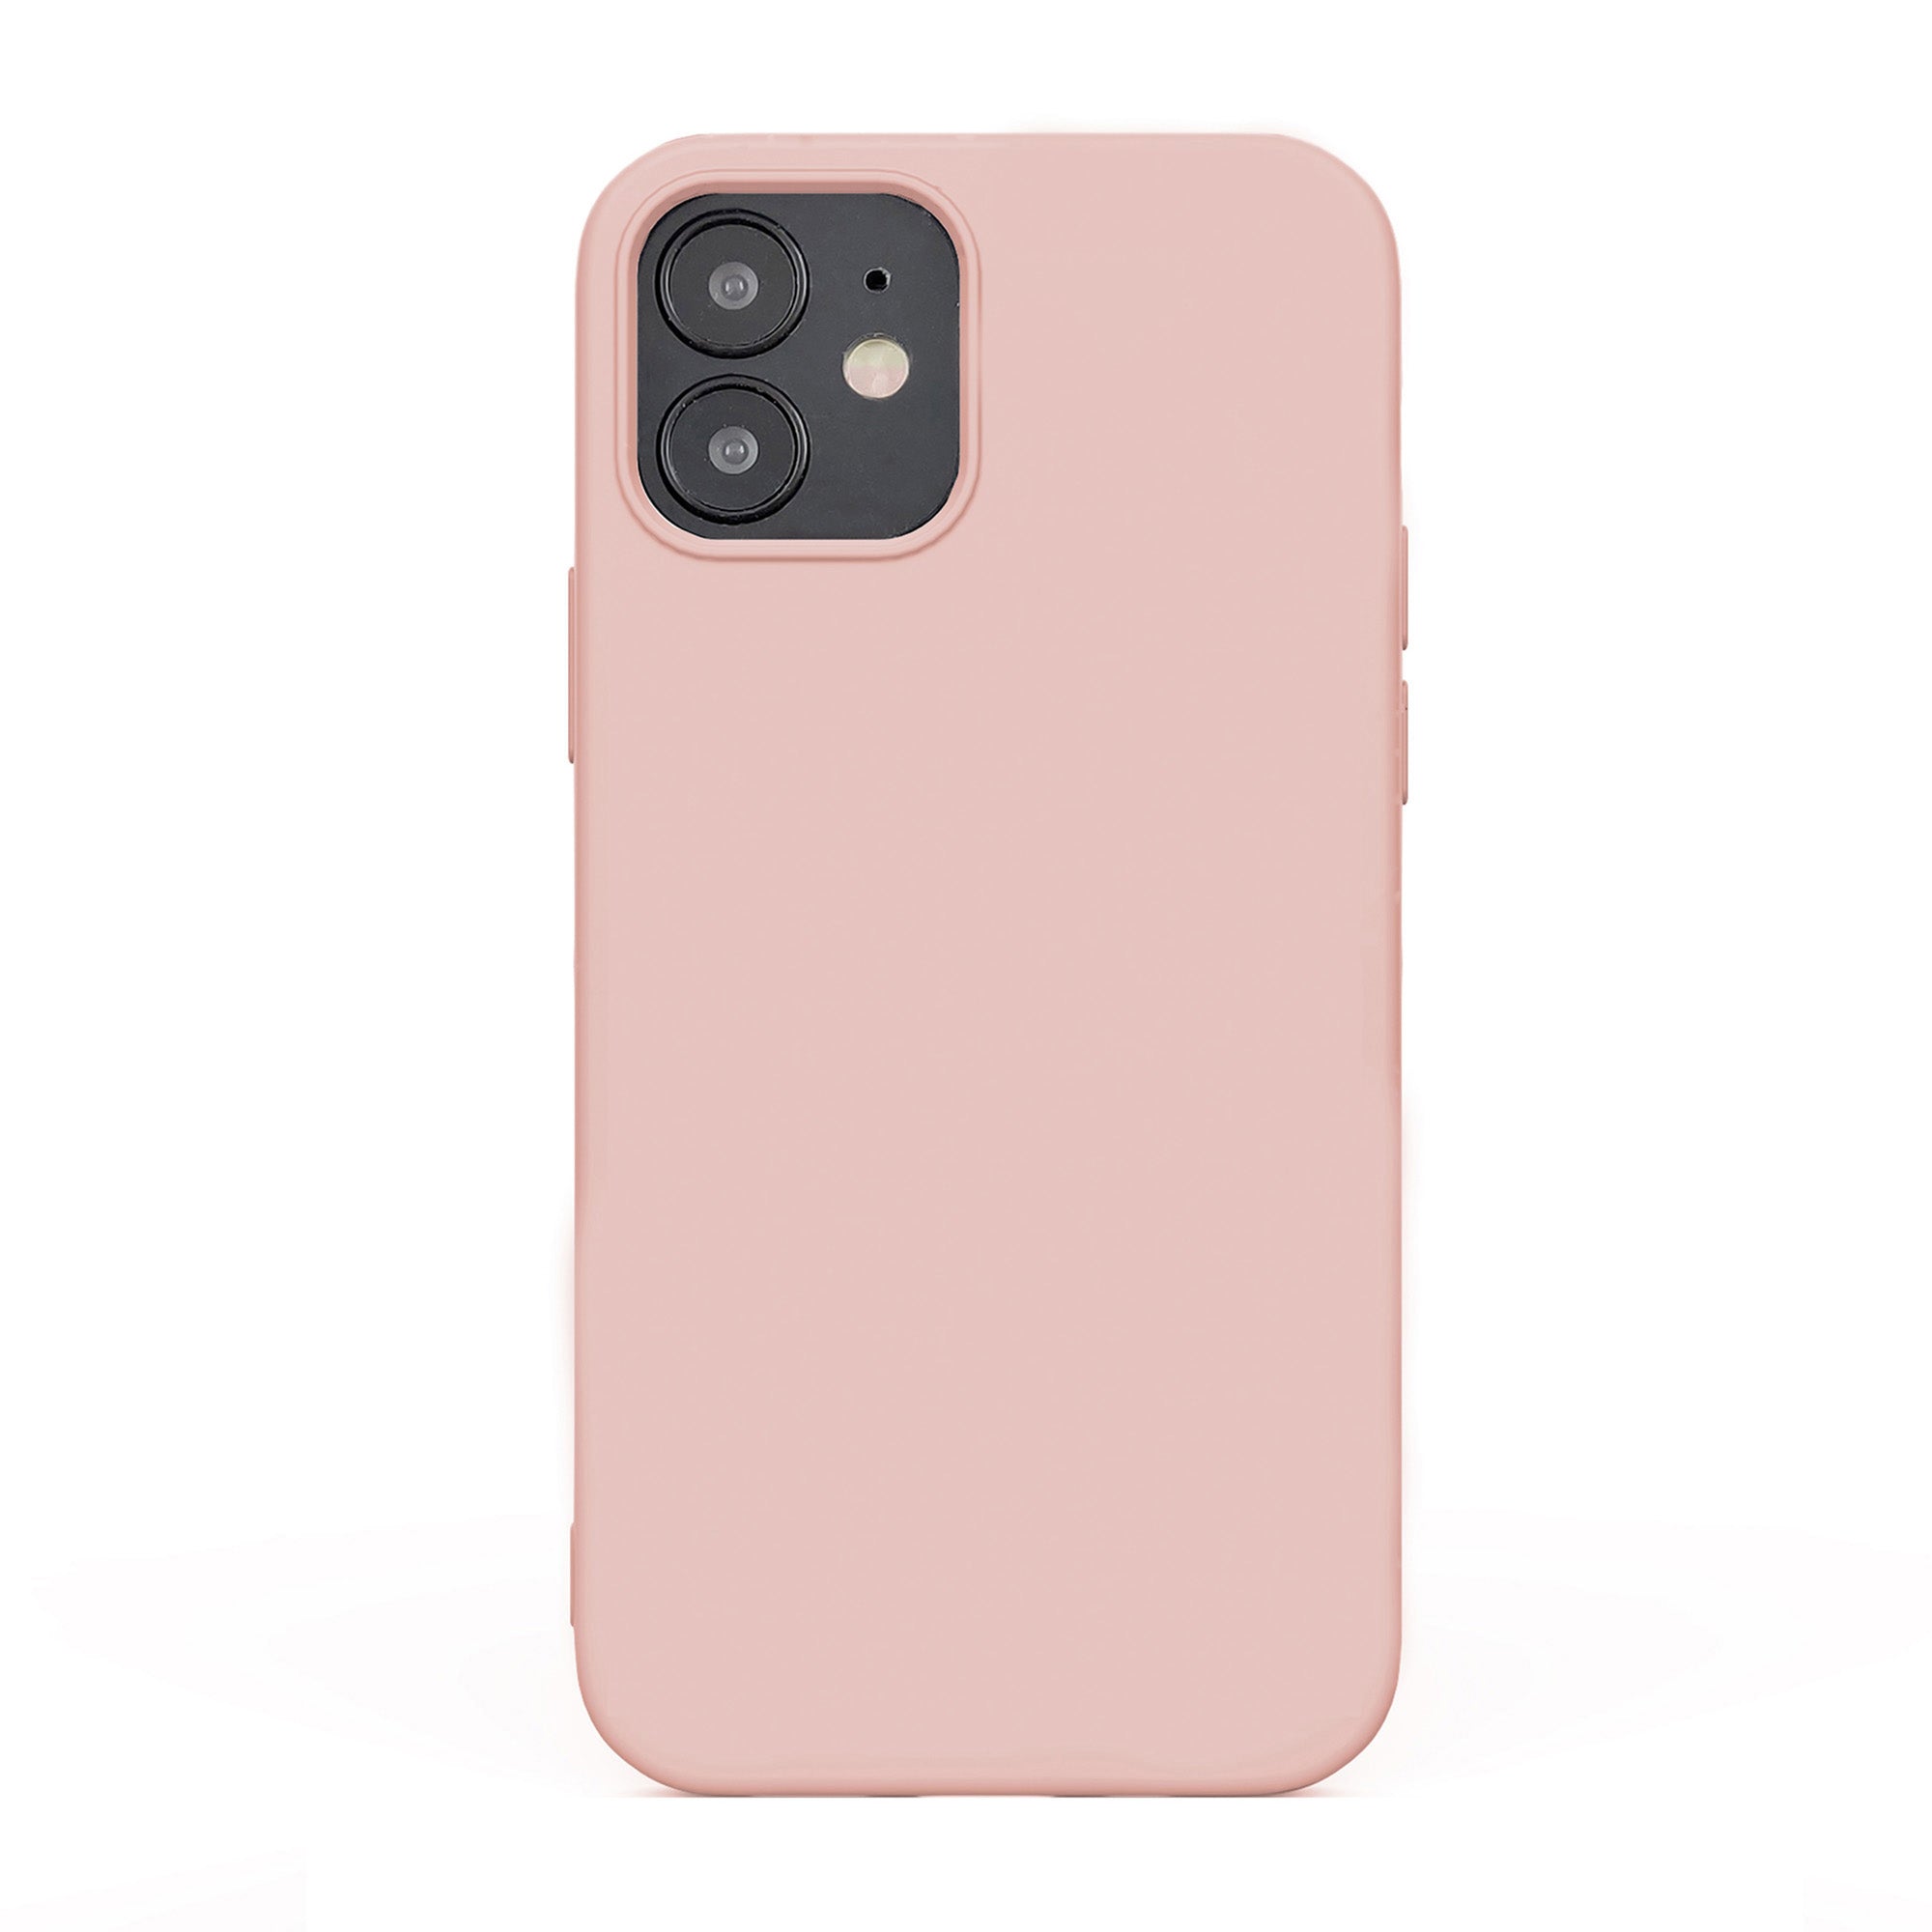 iPhone 12 Mini Uunique Pink Liquid Silicone Case - 15-07597